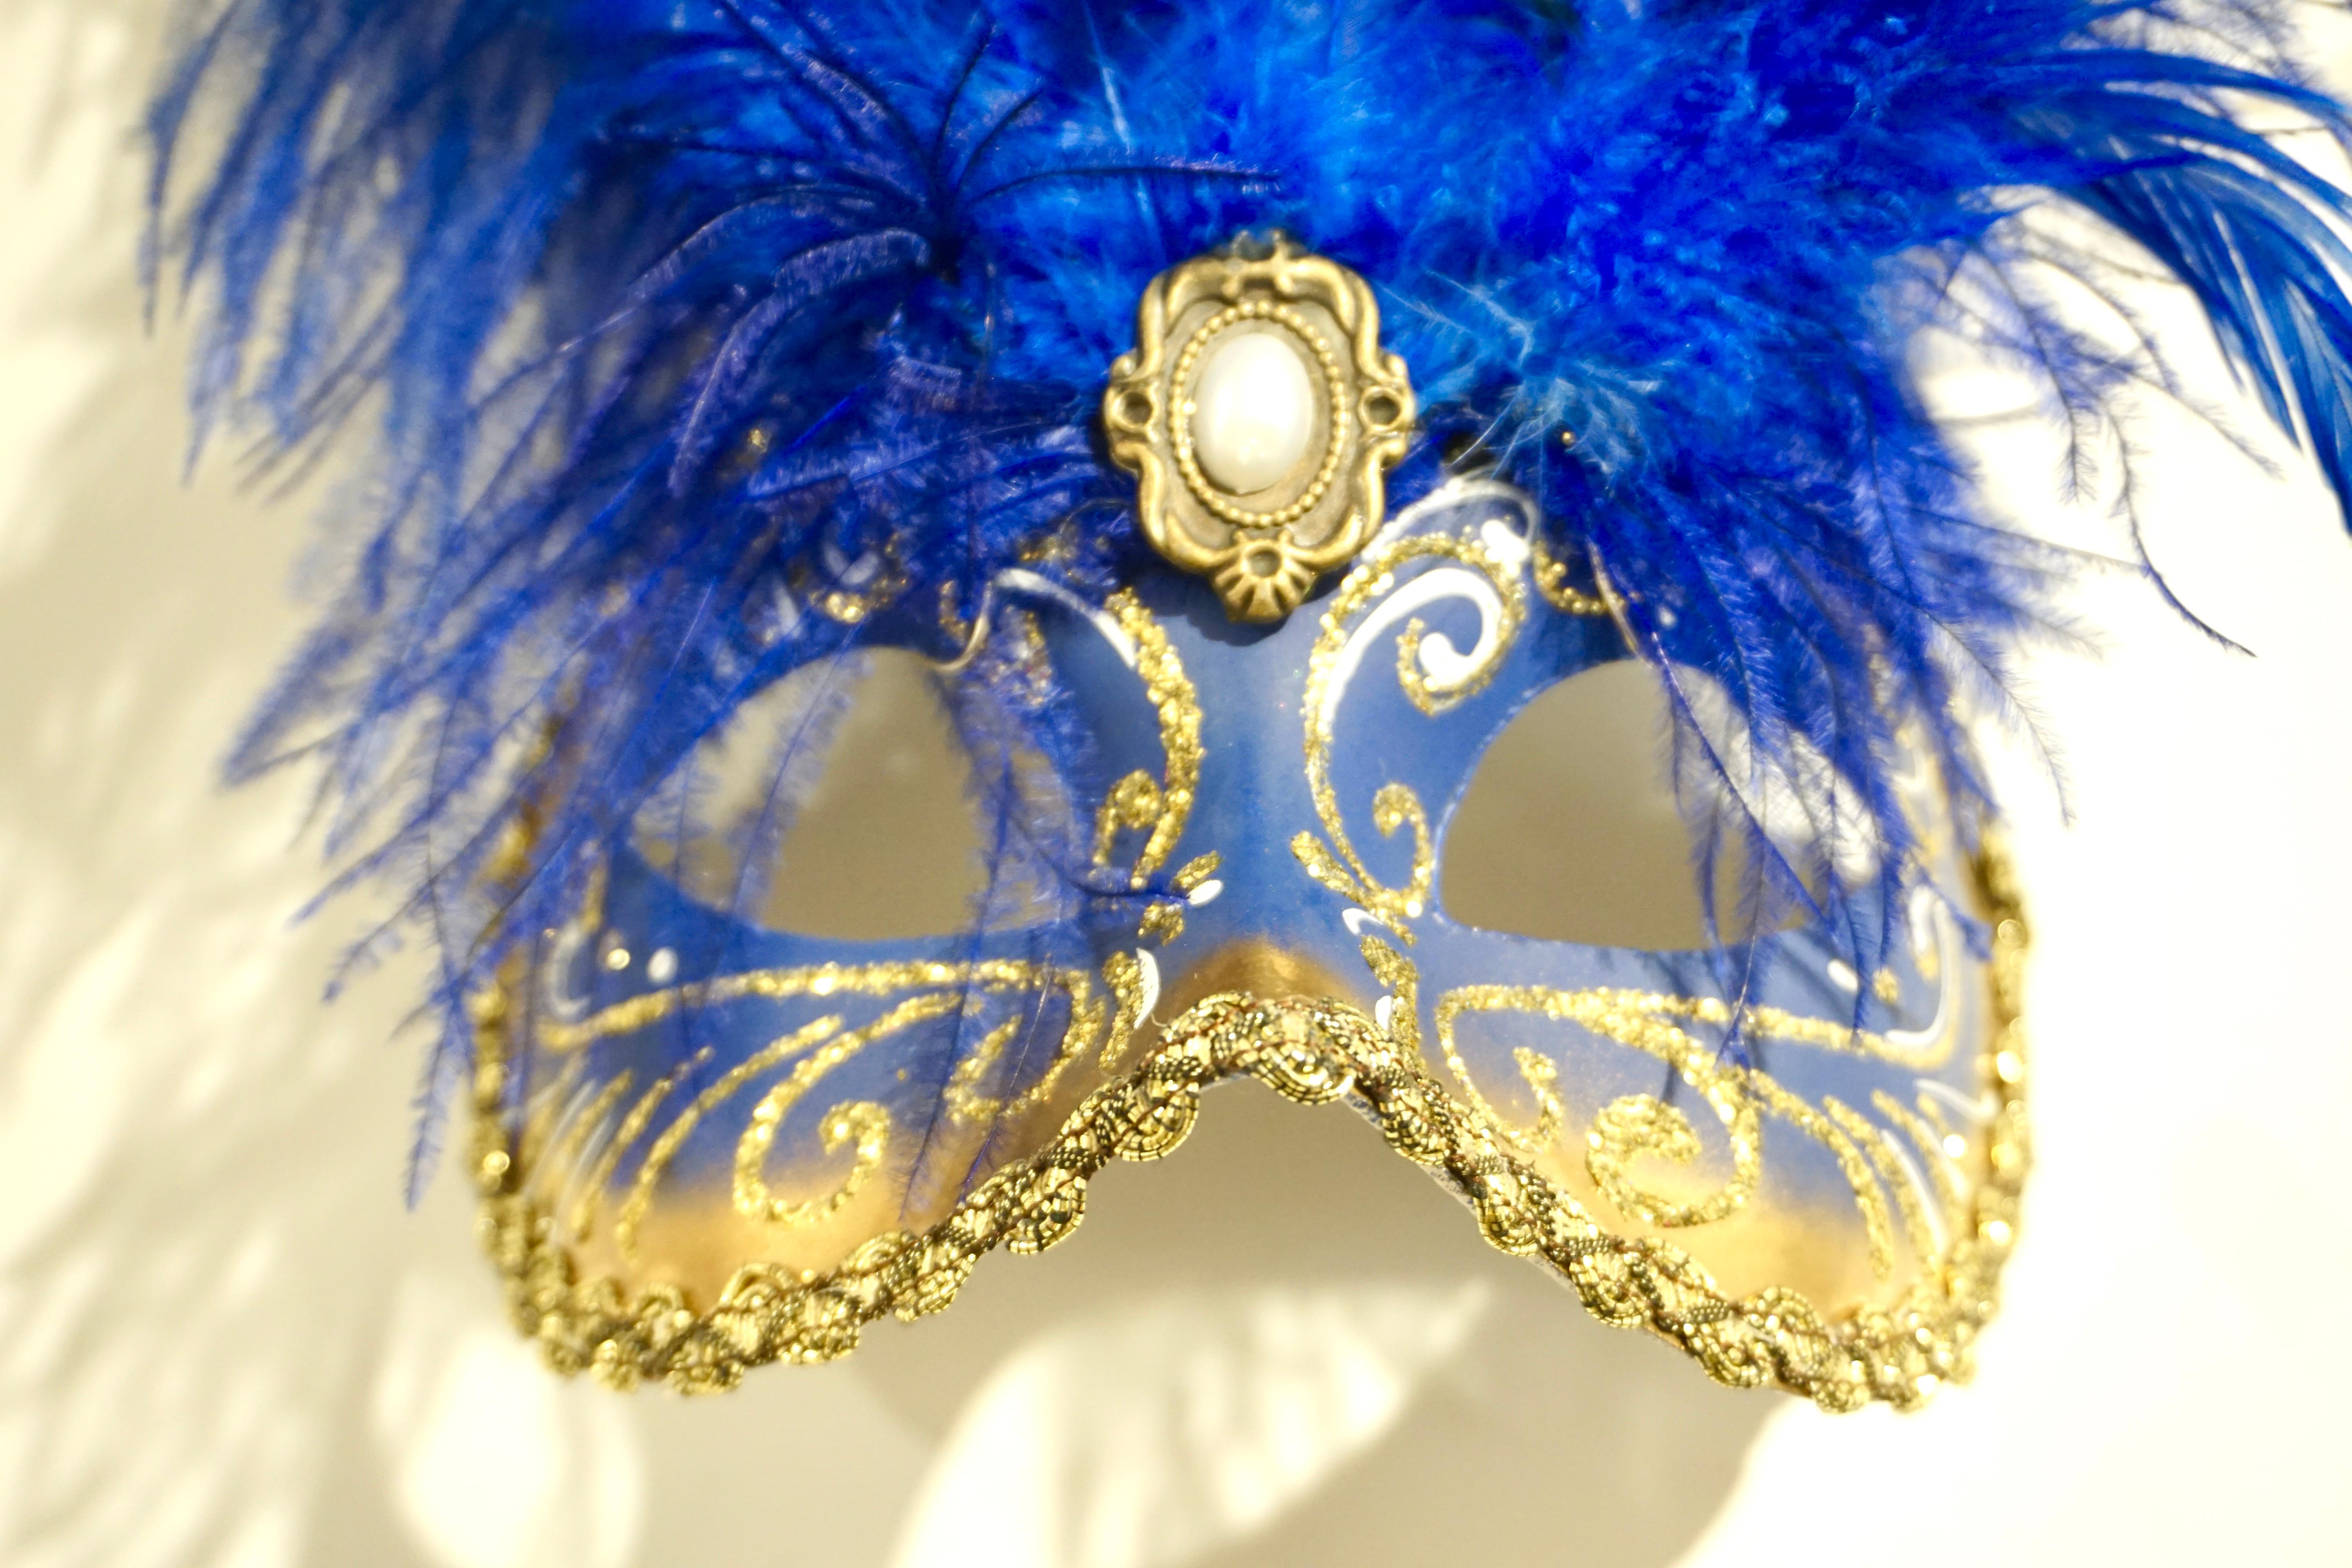 Ce masque Folk Art bleu cobalt est une véritable création vénitienne, entièrement dessinée et réalisée à la main avec un décor en or et en pierre blanche. 
Les artistes italiens ont réalisé cette pièce dans le respect des traditions artisanales et